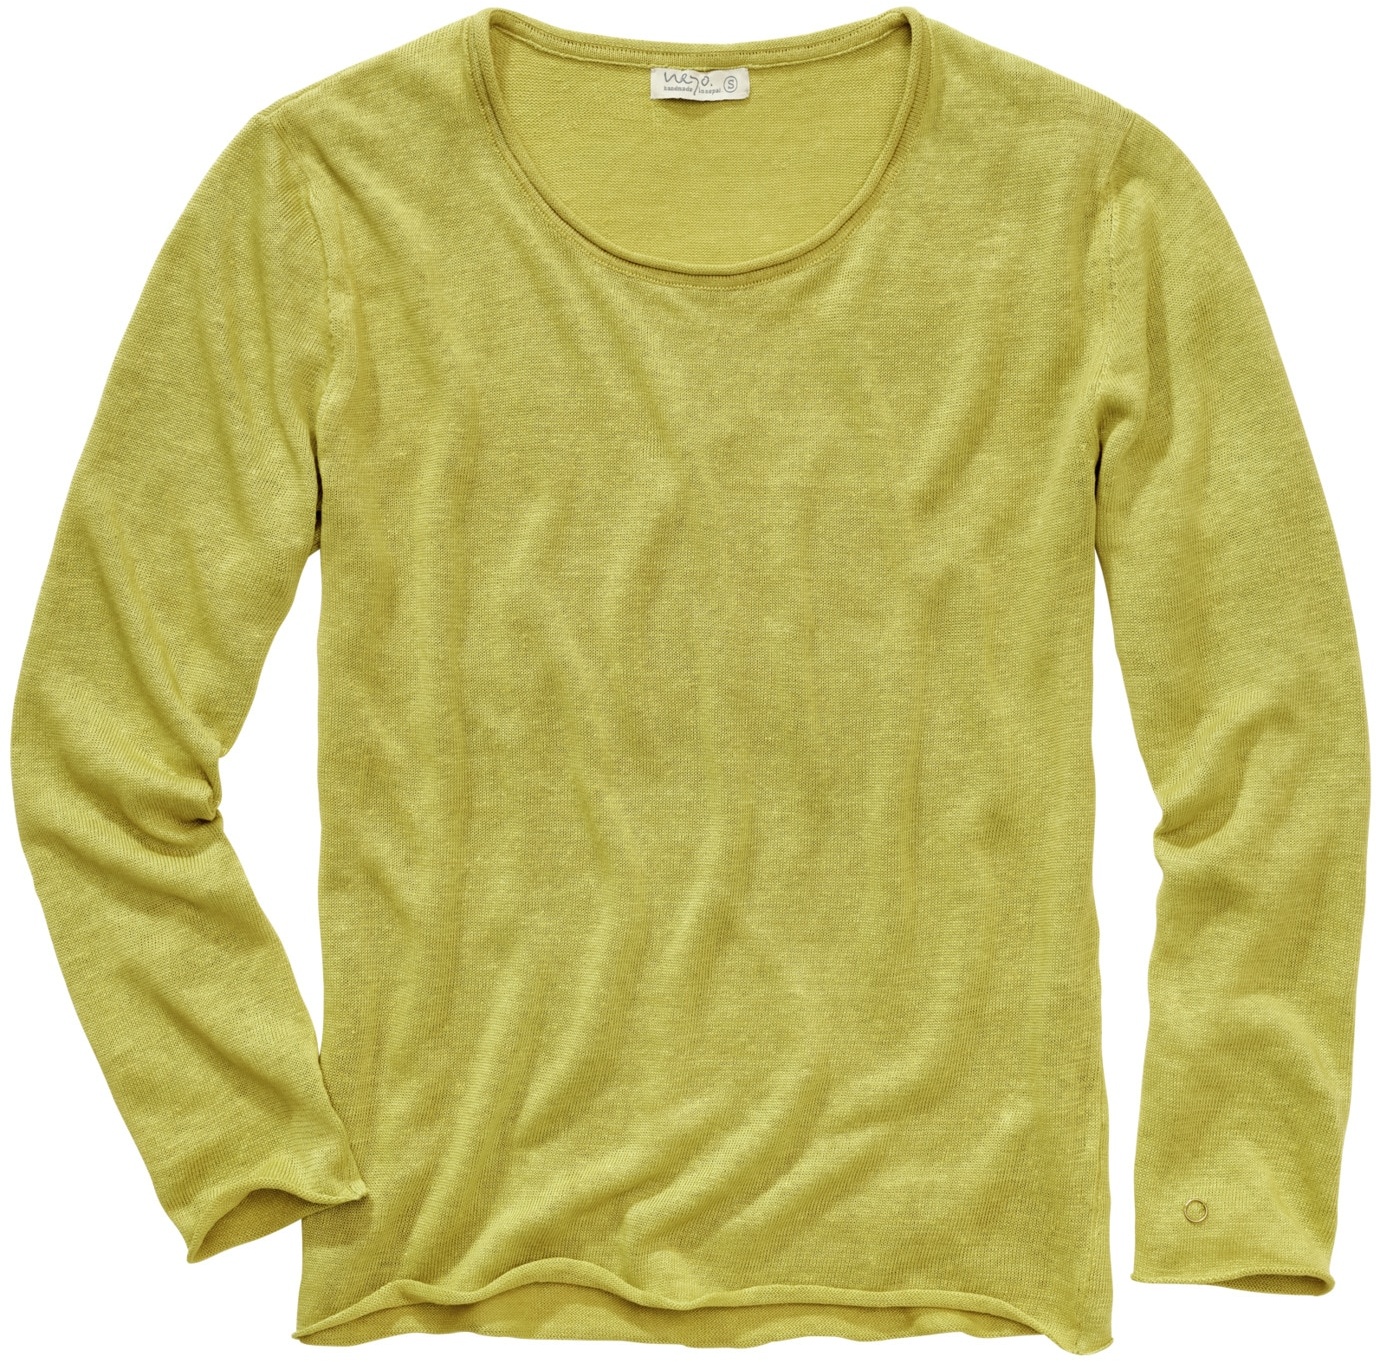 Neyo Herren Sweater Regular Fit Gelb einfarbig - S